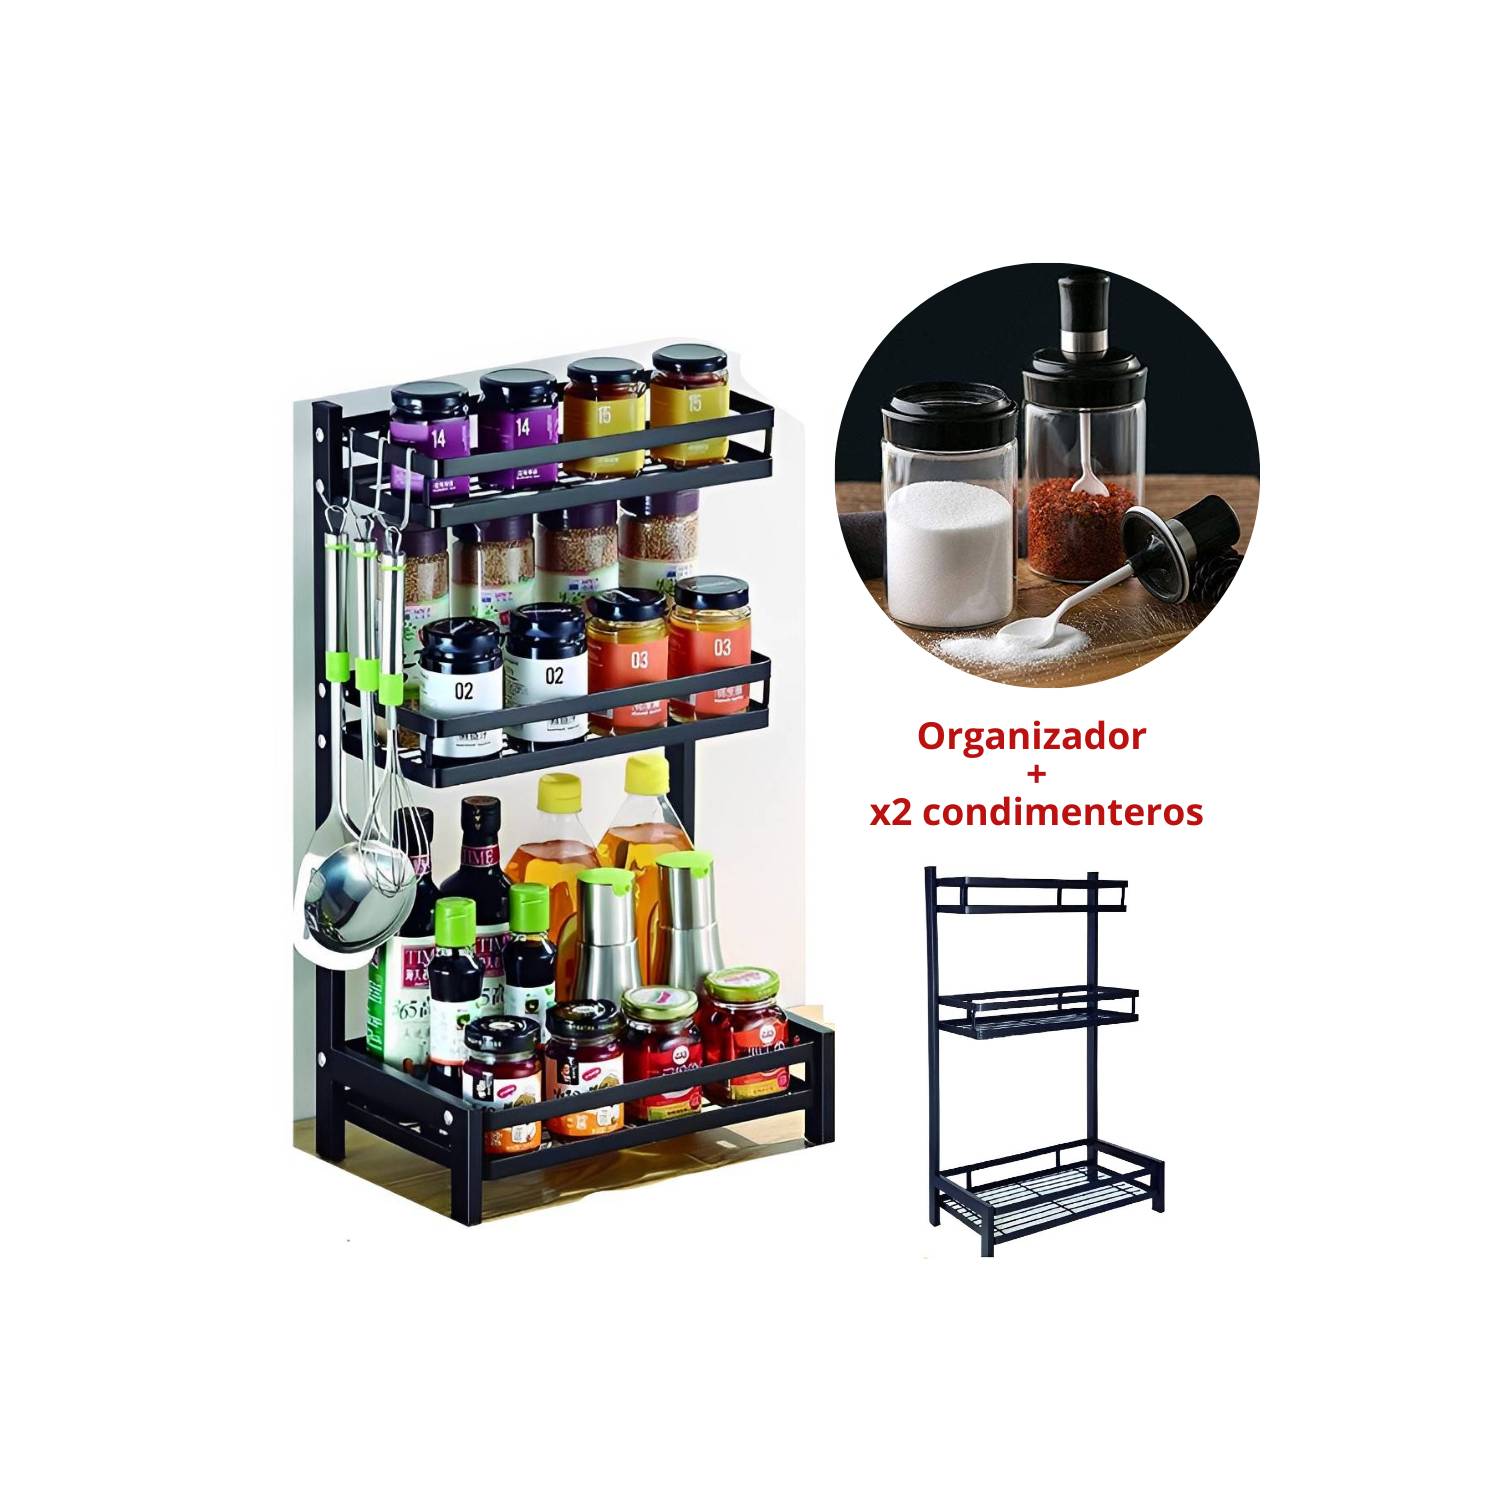 Organizador de condimentos 3 niveles con 2 condimenteros pack INSPIRA